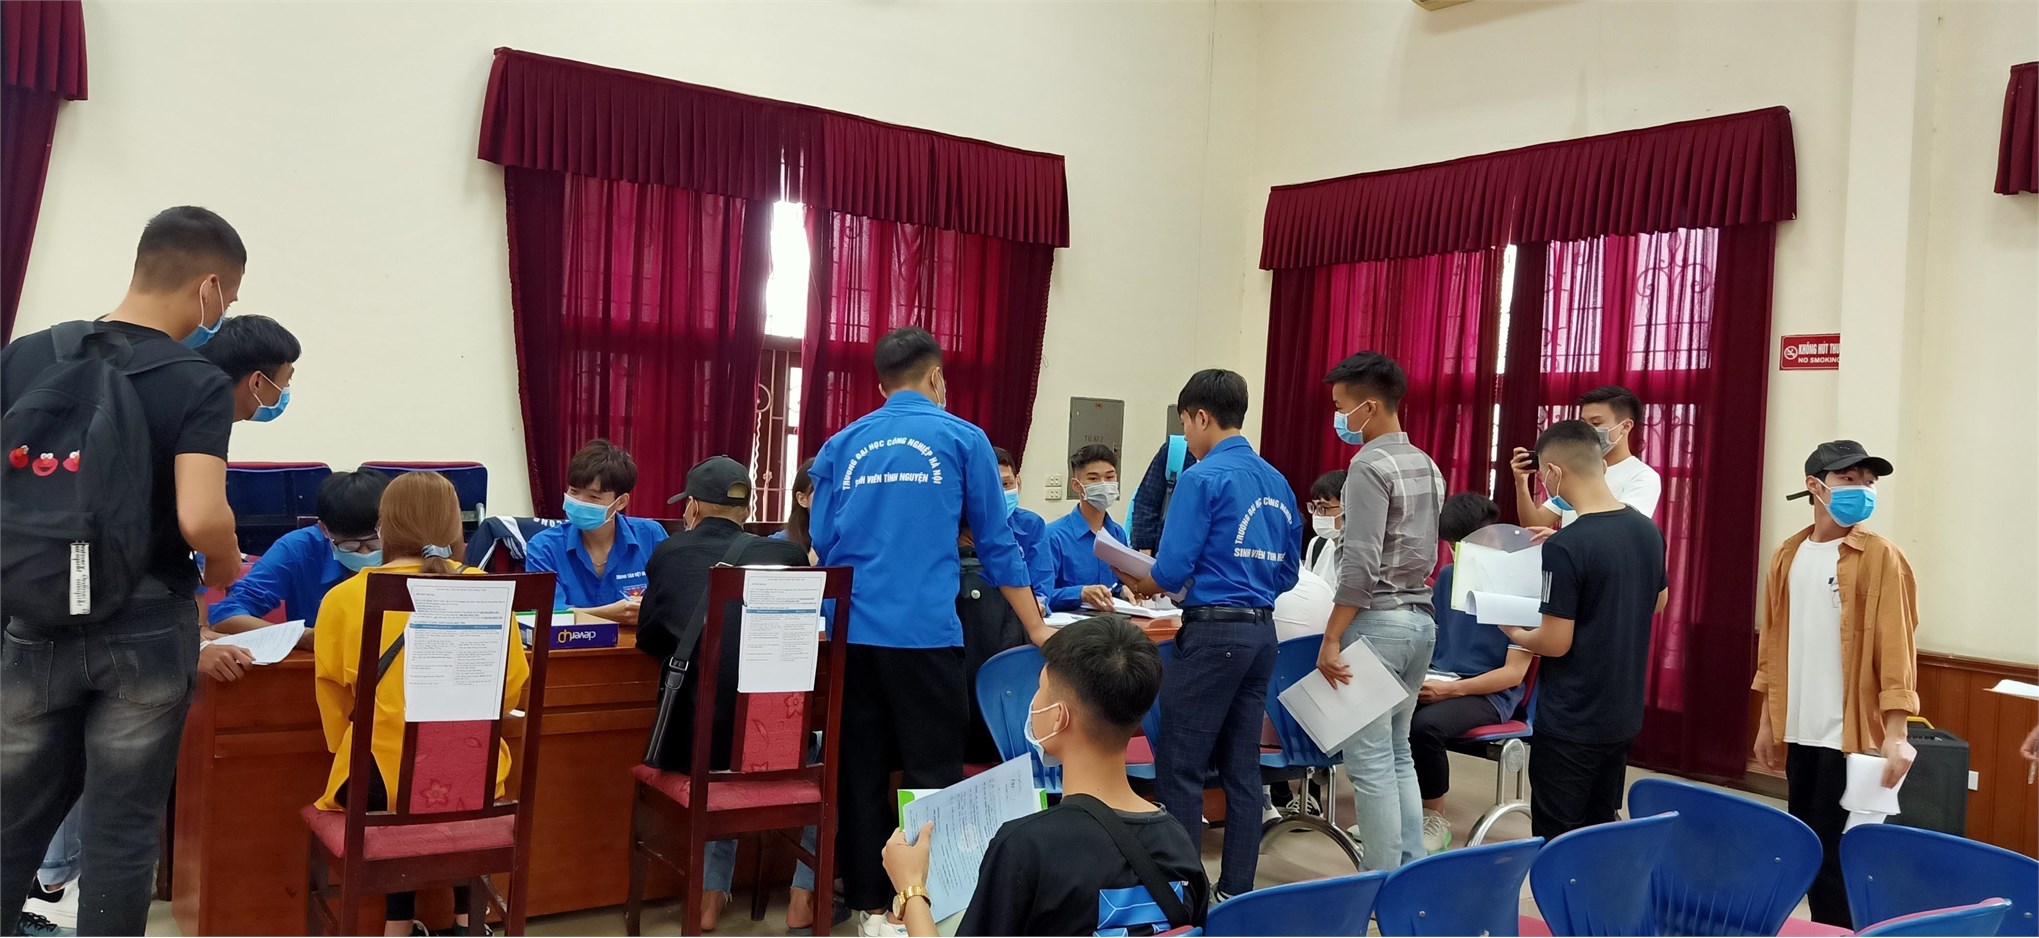 Trung tâm Việt – Nhật chào đón gần 800 tân sinh viên nhập học